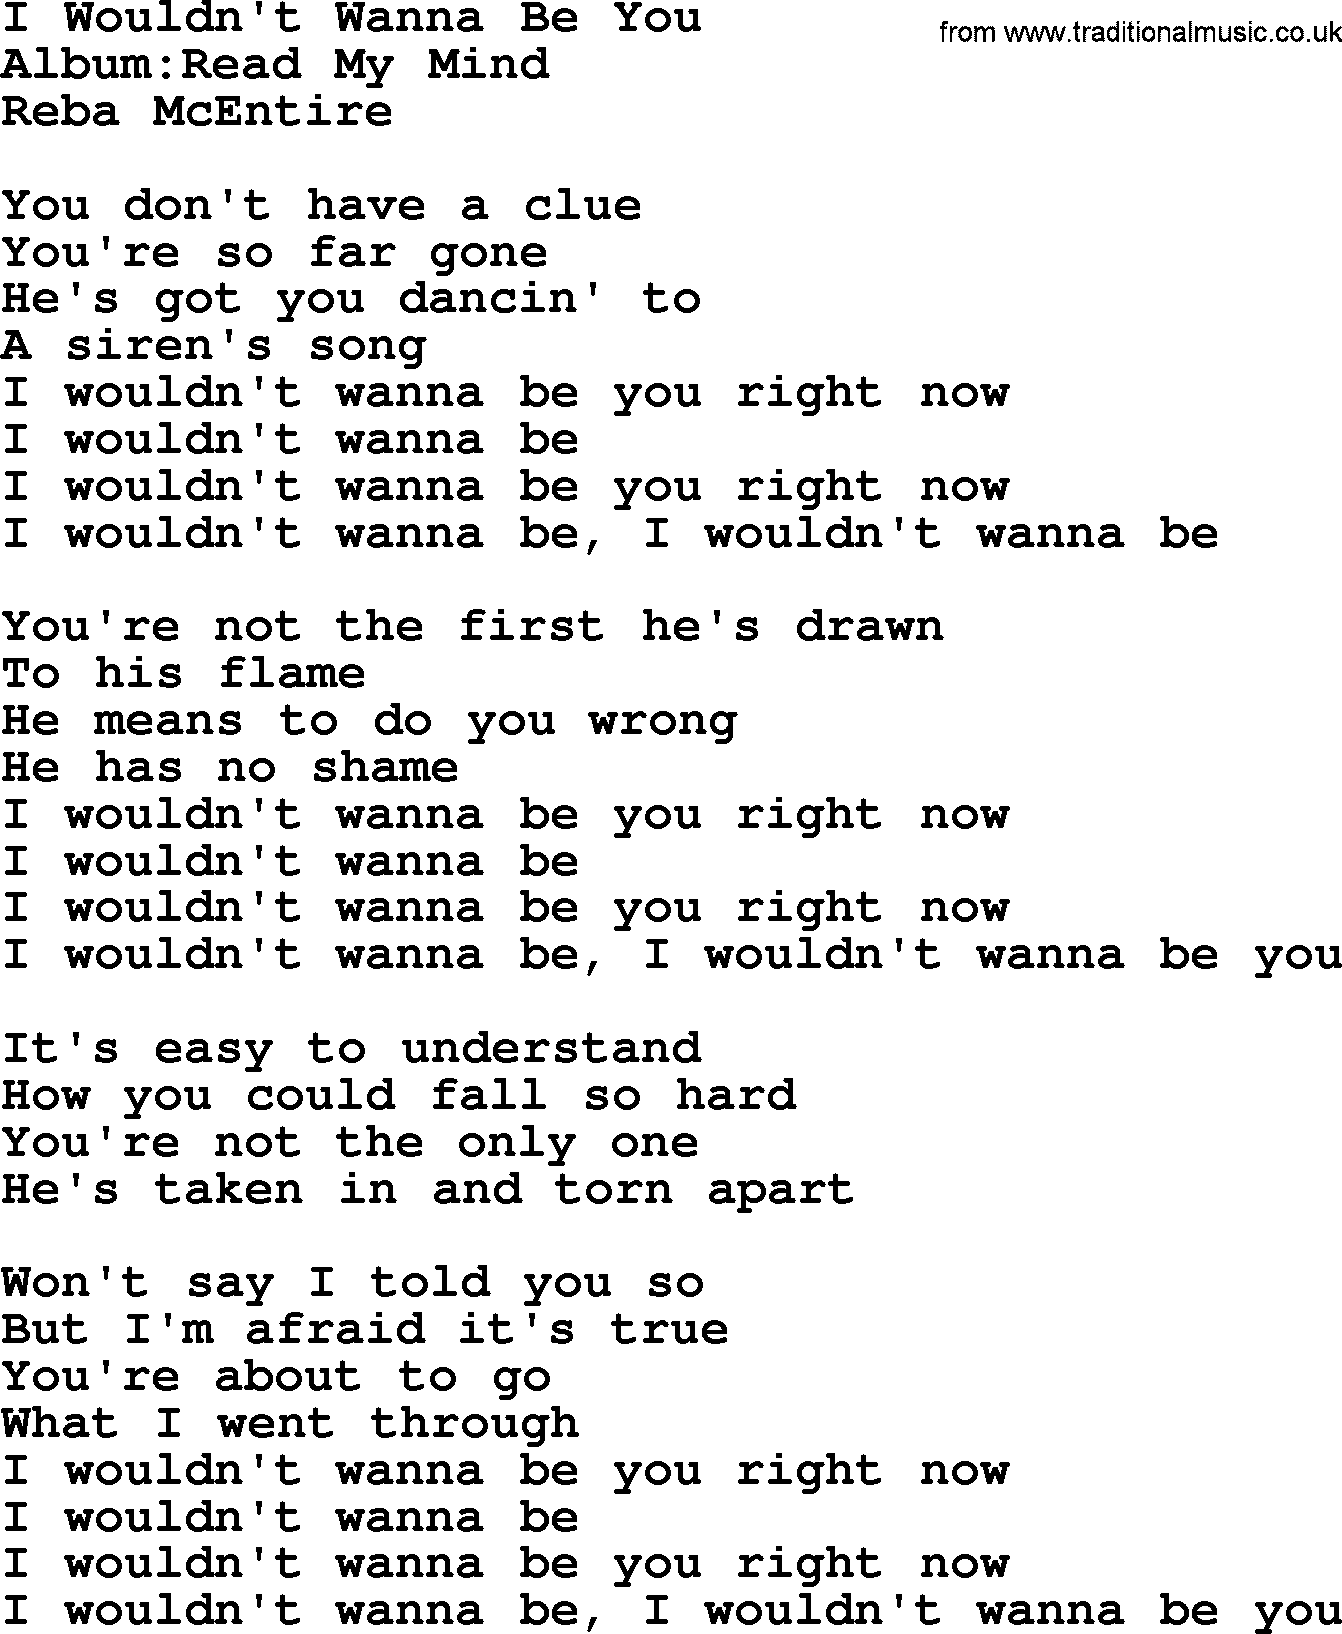 Reba McEntire song: I Wouldn't Wanna Be You lyrics